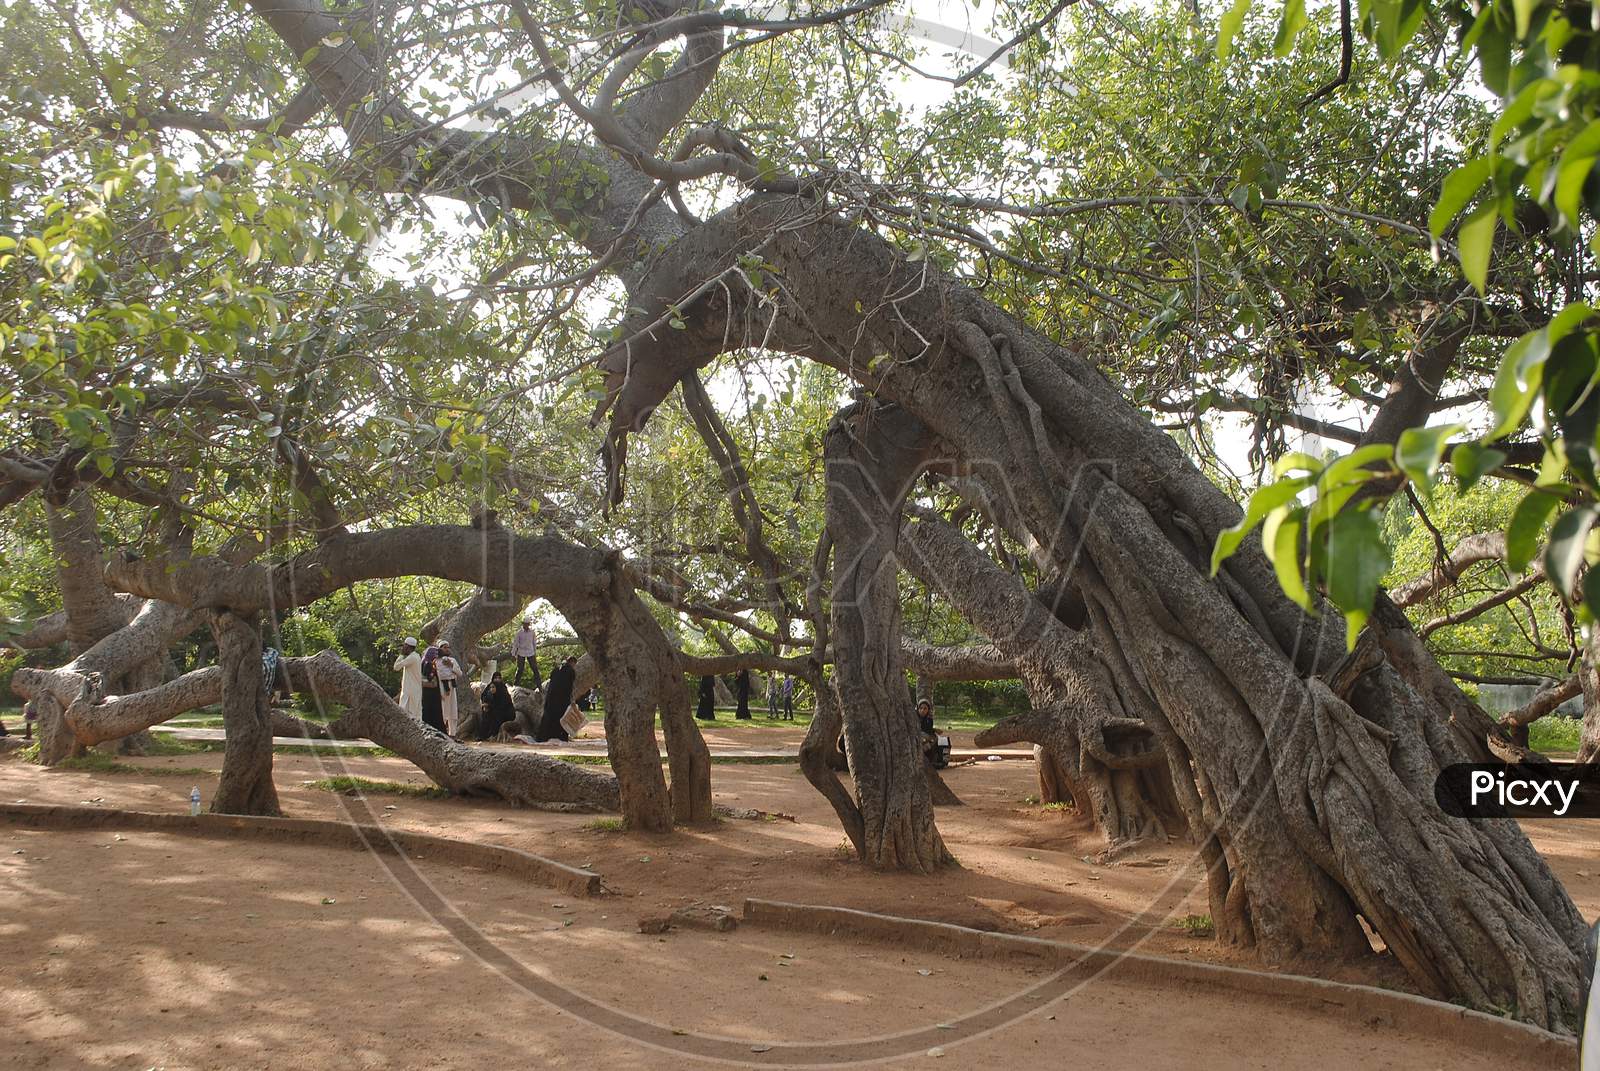 Pillalamarri Banyan tree